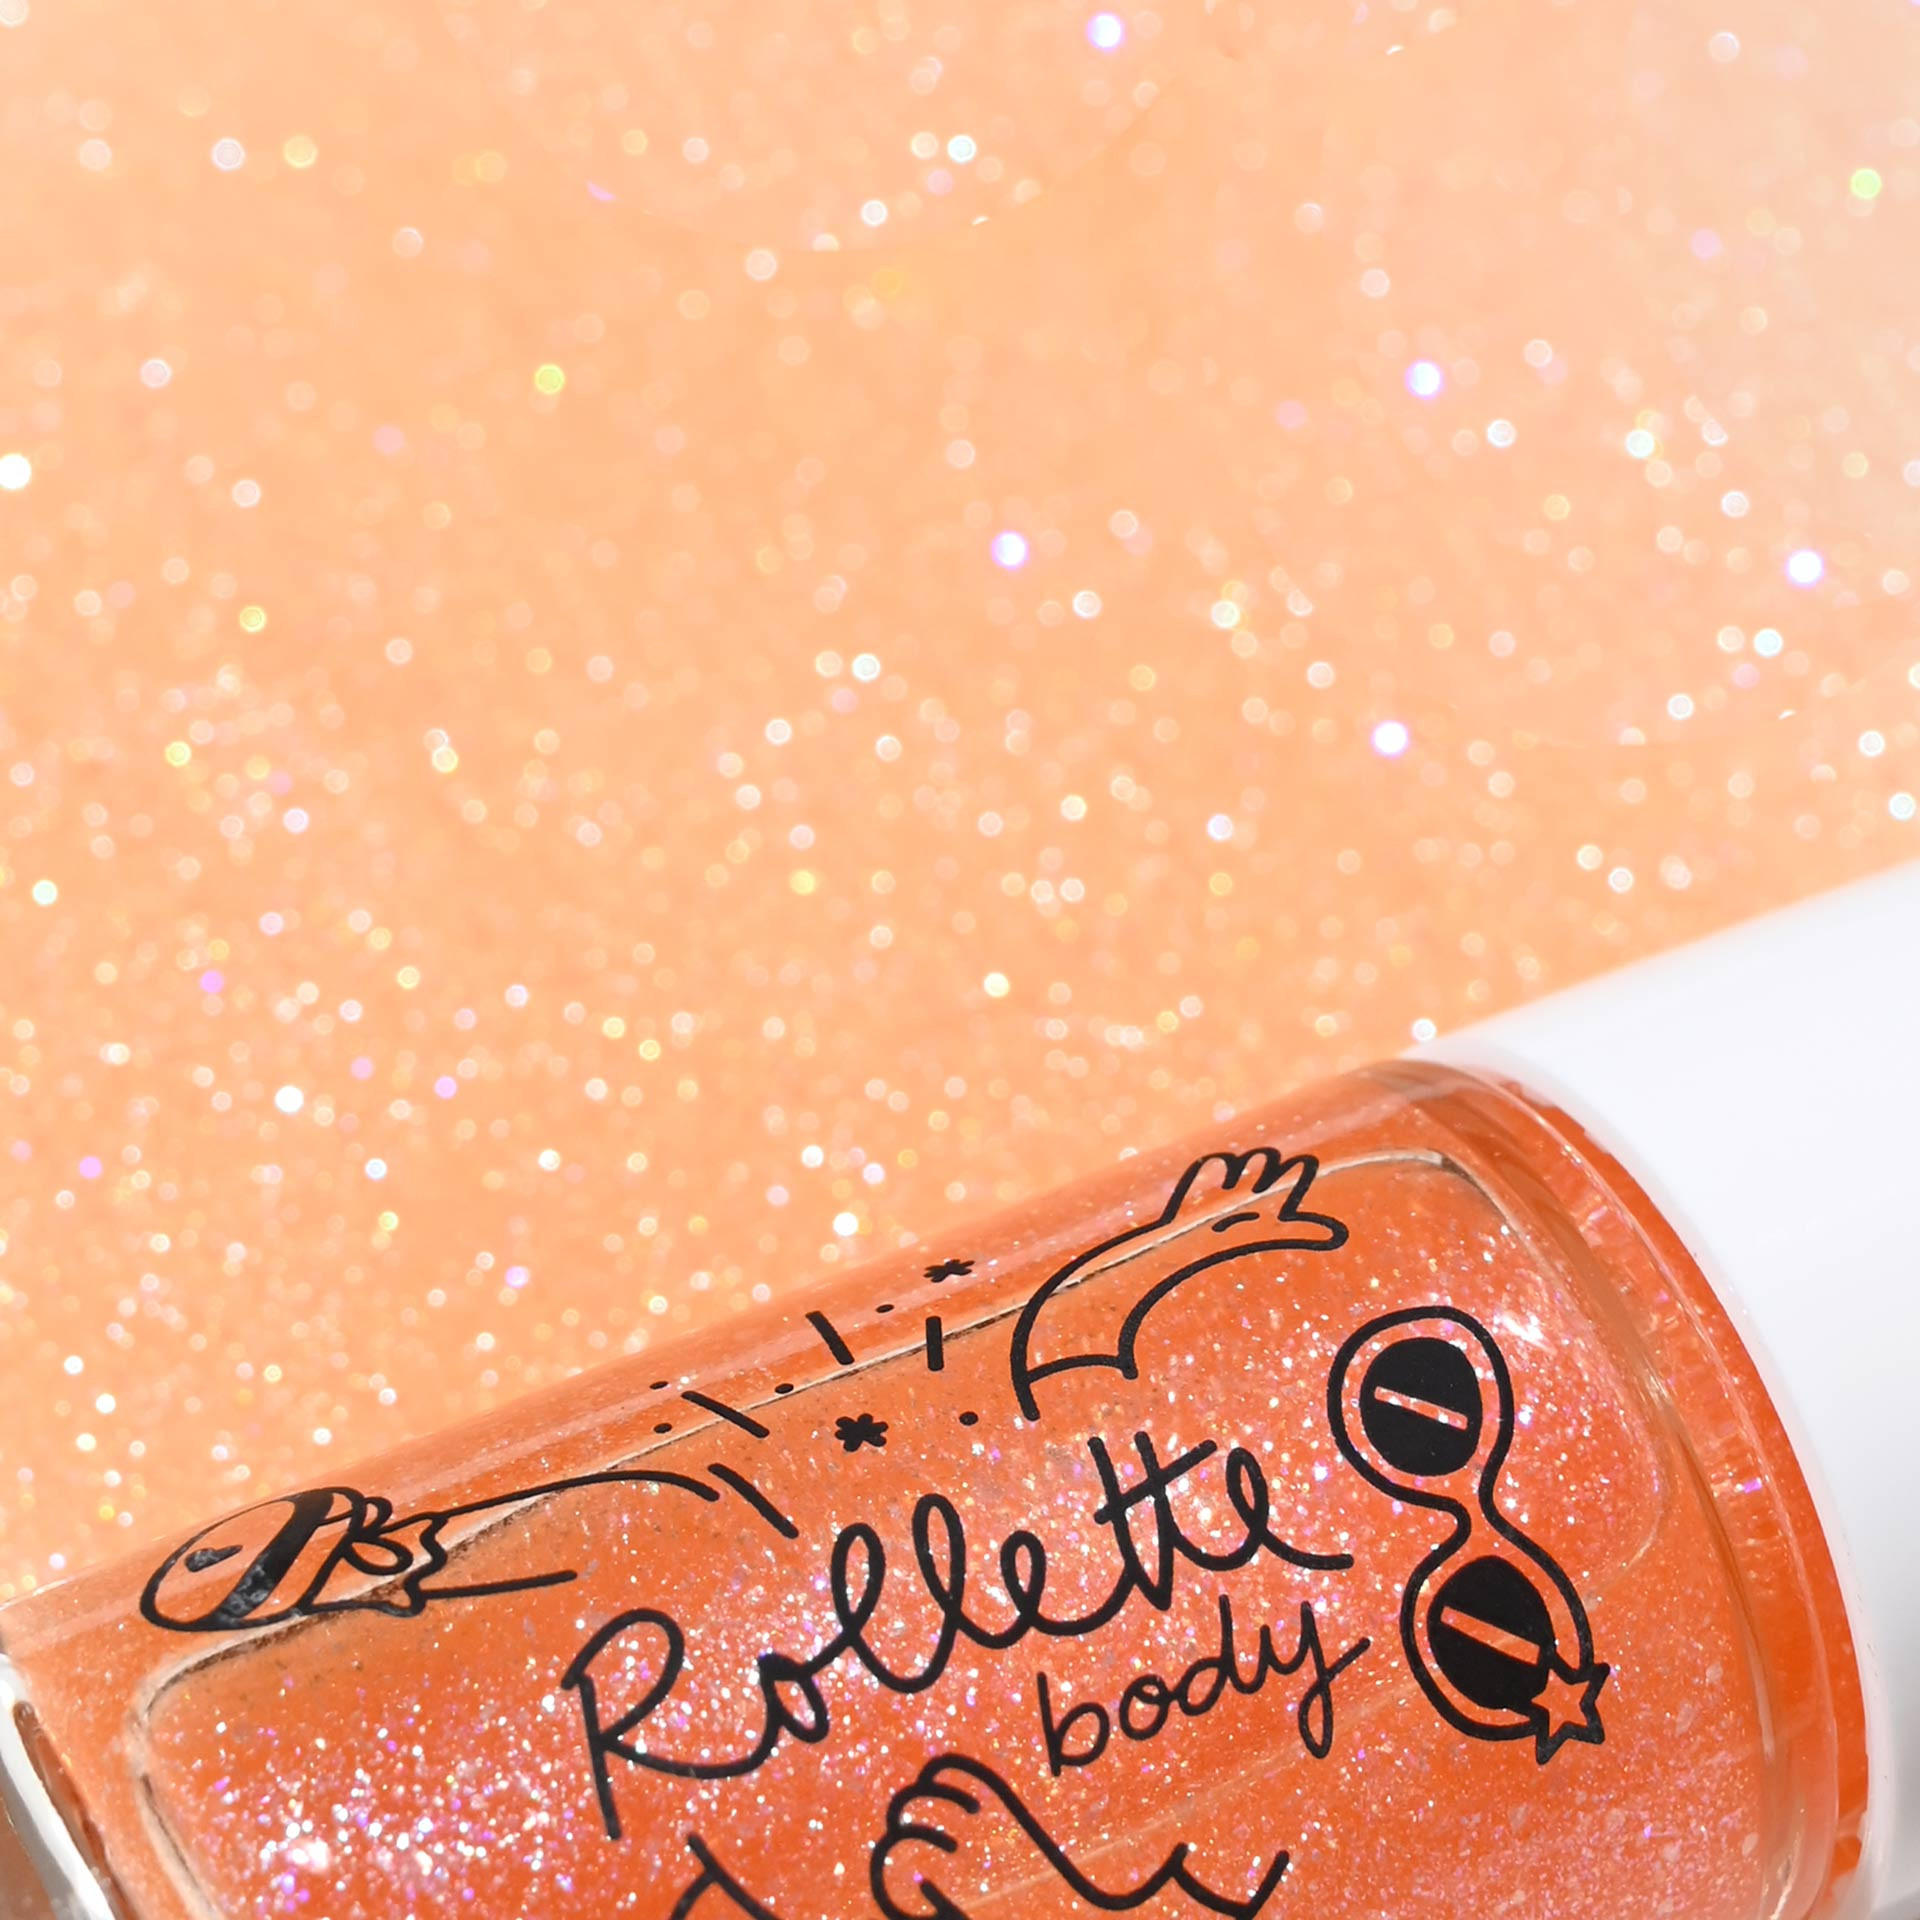 Body Rollette - peach Body Gel